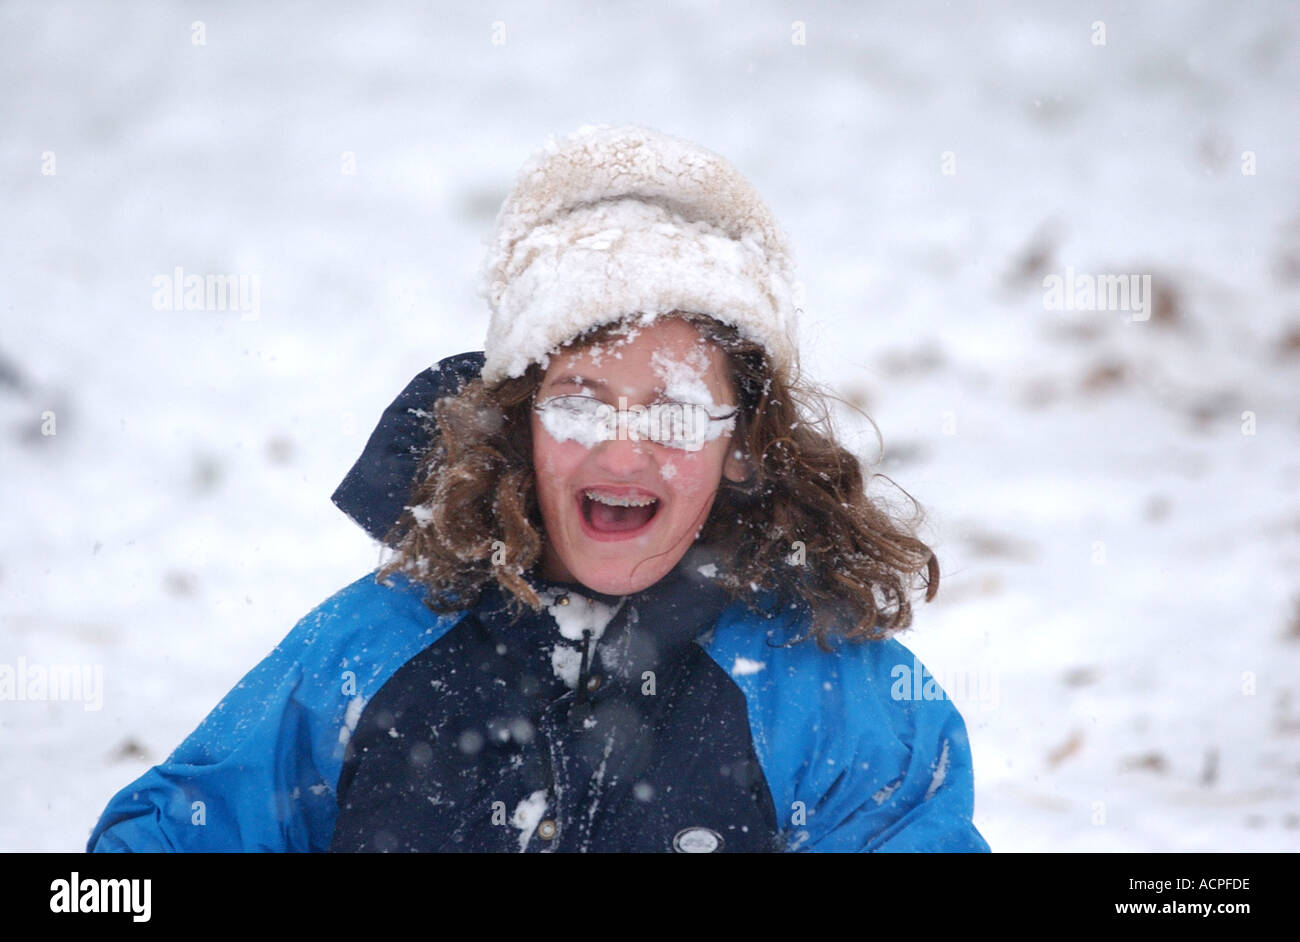 Funny kid photo fille avec face recouverte de neige après être frappé par snowball Banque D'Images